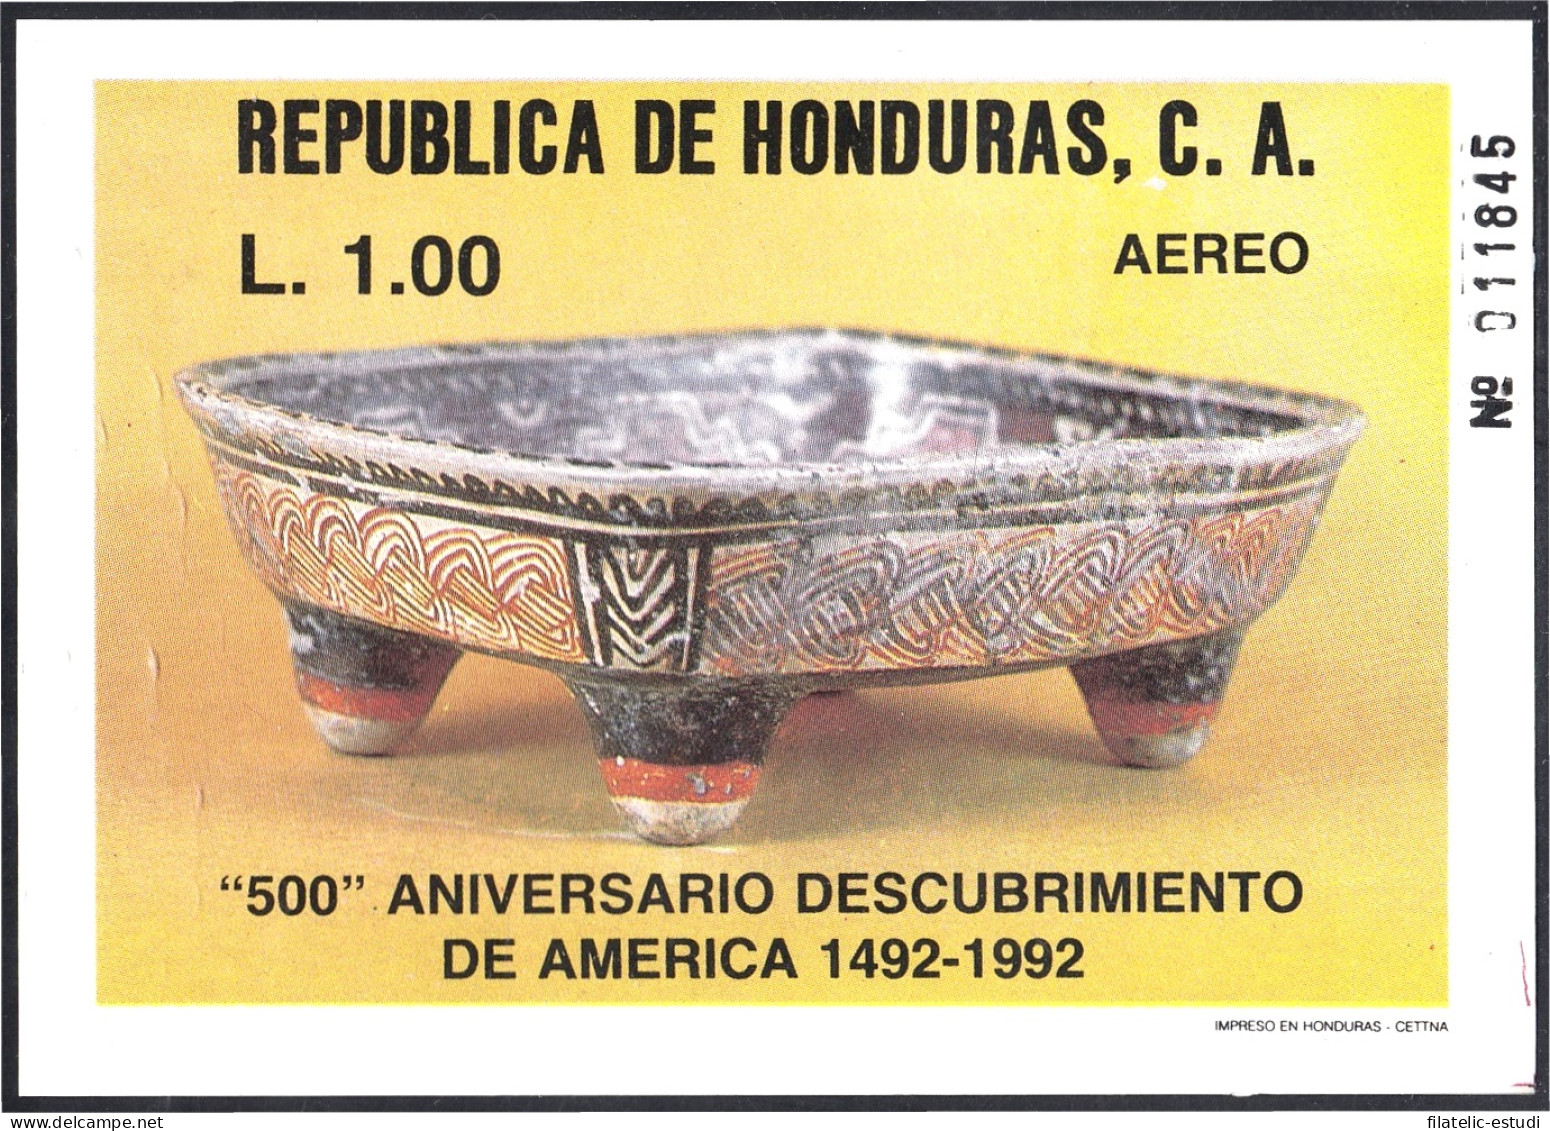 Honduras HB 39 1988 500 Aniversario Del Descubrimiento De América MNH - Honduras